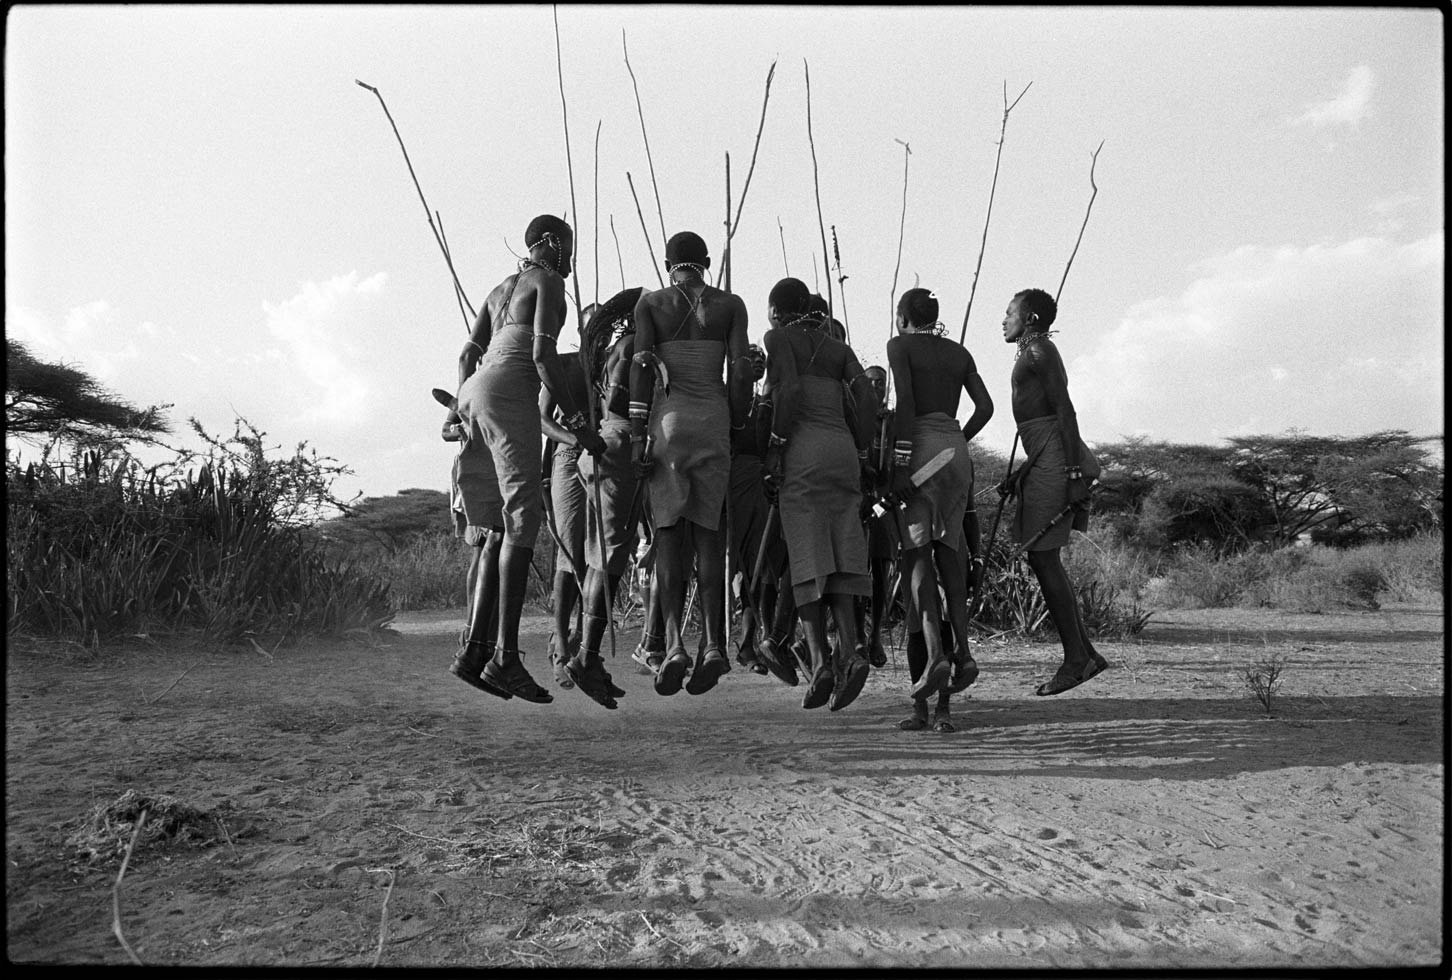 "If you can talk, you can sing, if you can walk, you can dance." Zimbabwean proverb

Maasai men dancing a traditional warrior dance. 

Northern Kenya, 1990